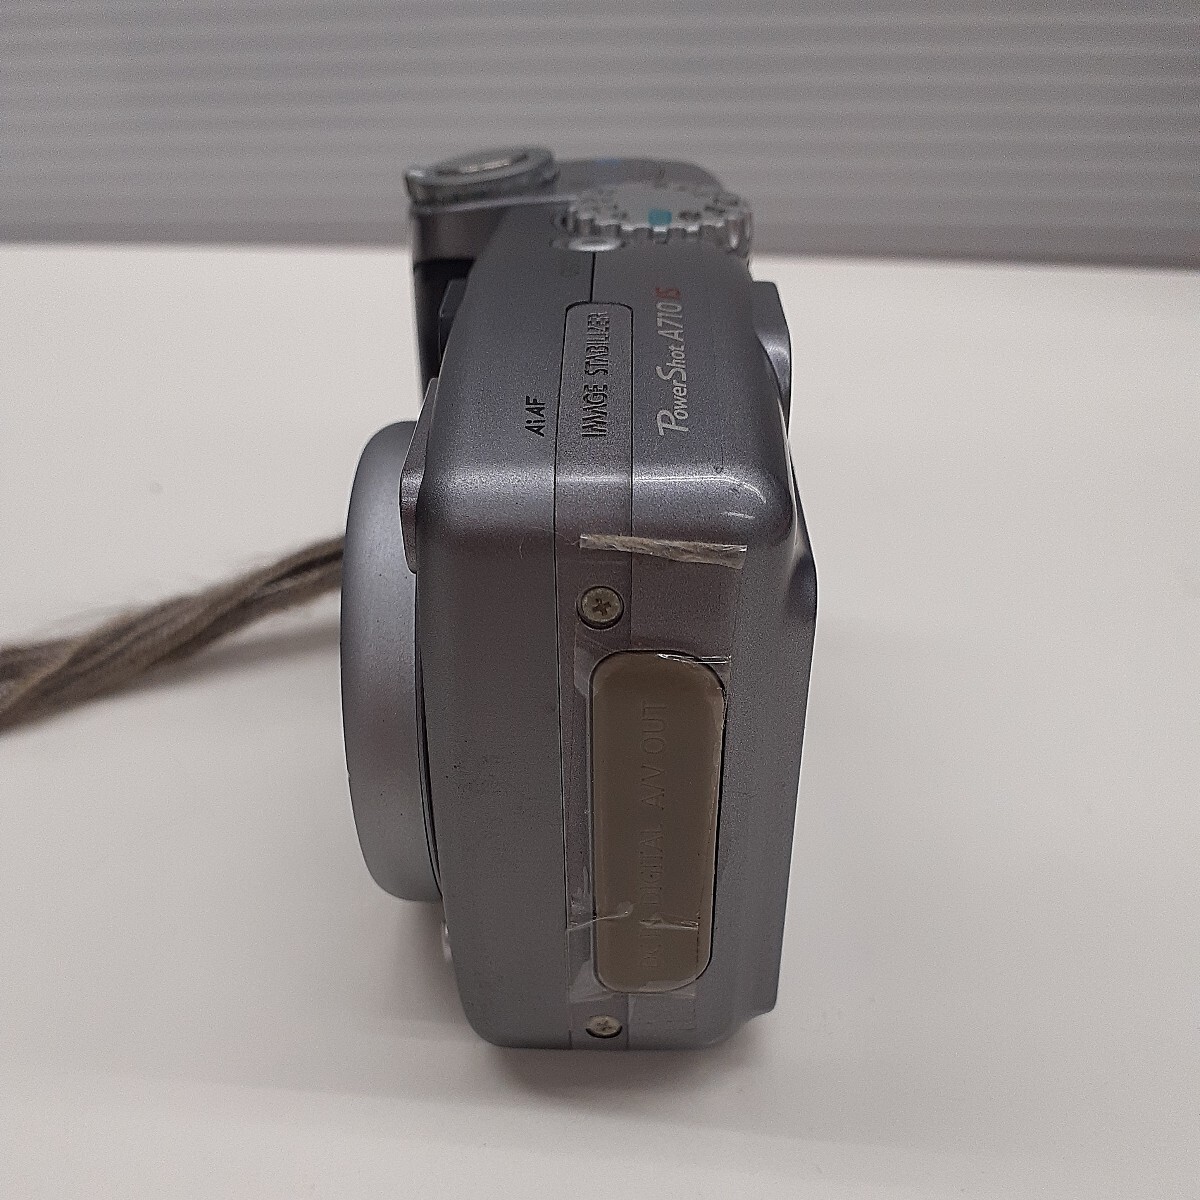 Canon キャノン PowerShot A710 IS コンパクトデジタルカメラ シルバー ソフトケース付き ジャンク品　ま_画像3